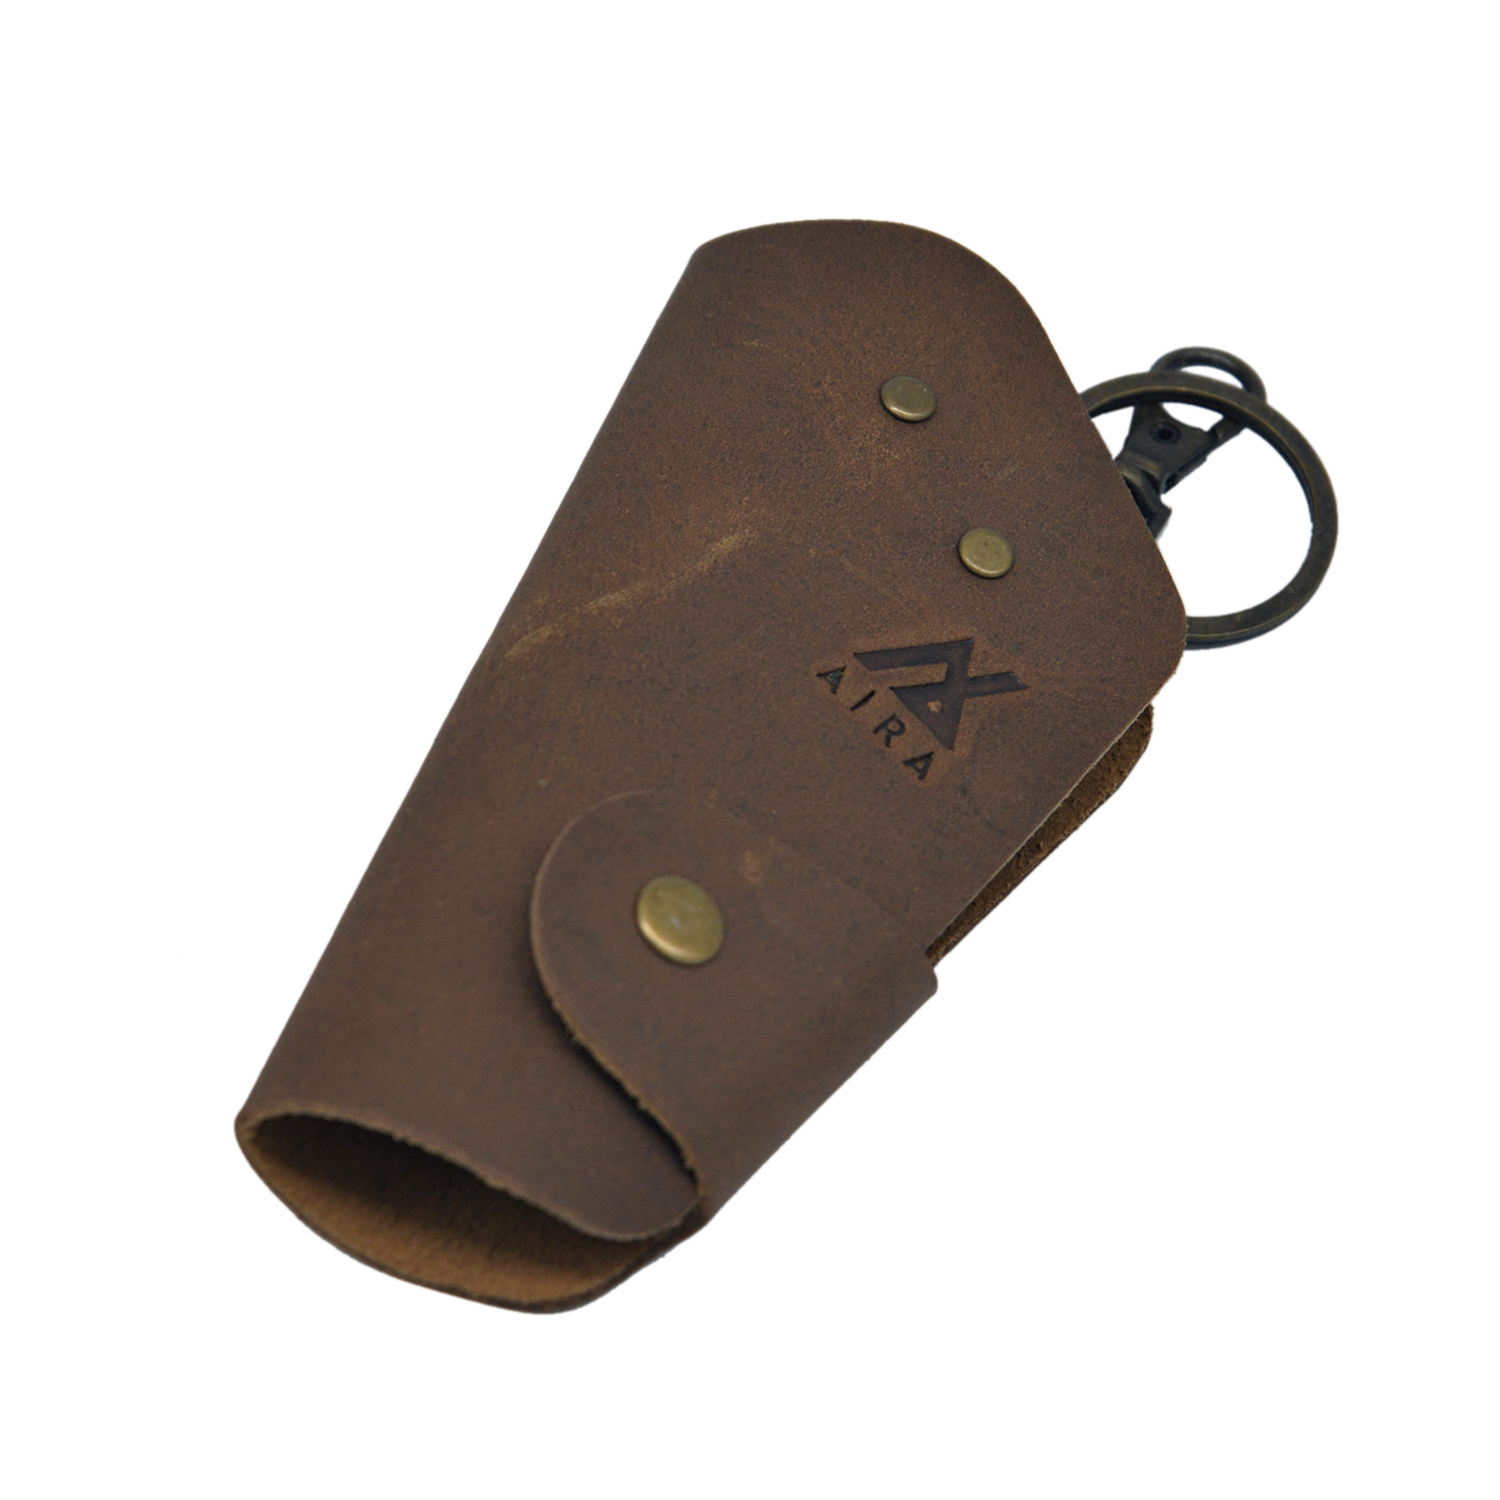 Genuine Leather Keys Holder: Black Brown Edition